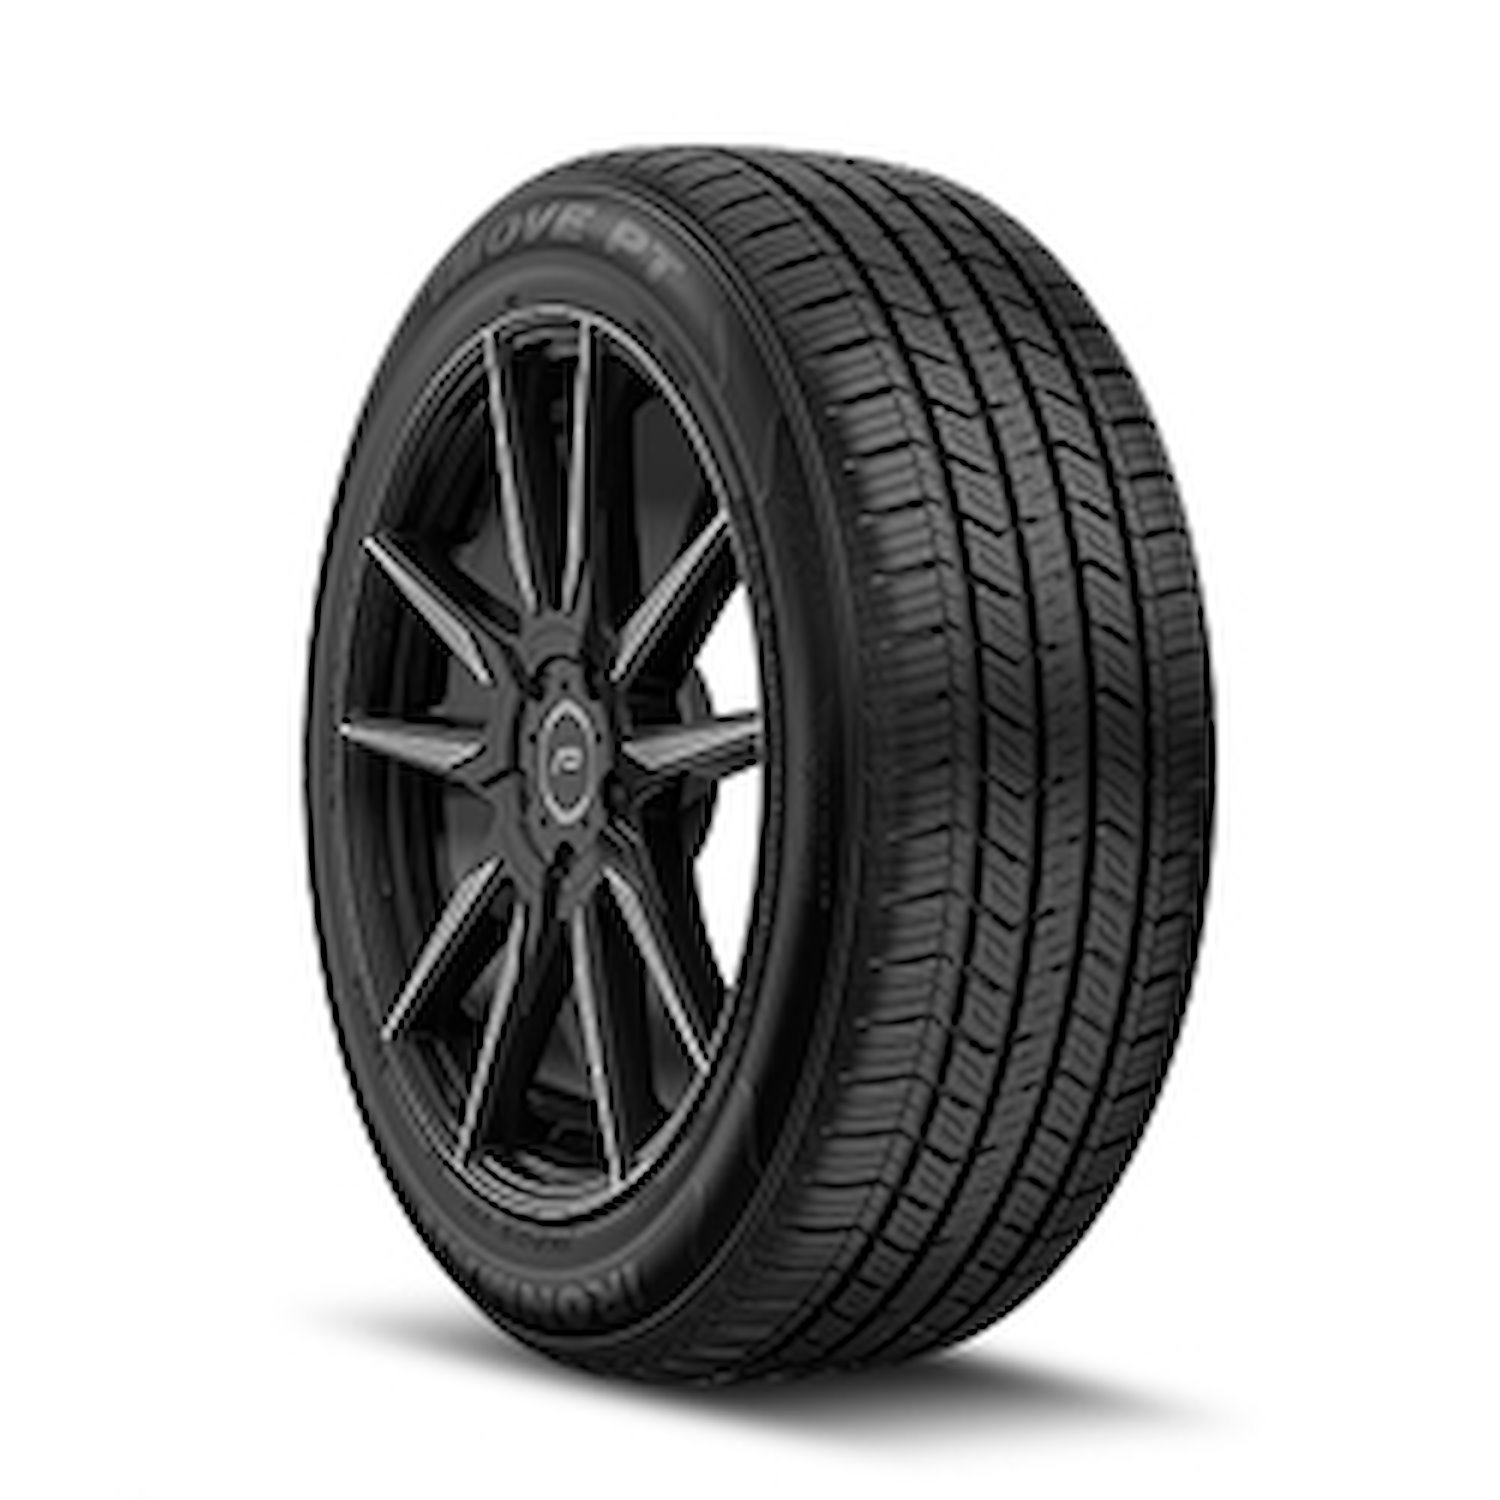 98478 iMOVE PT Tire, 235/55R17, 99H